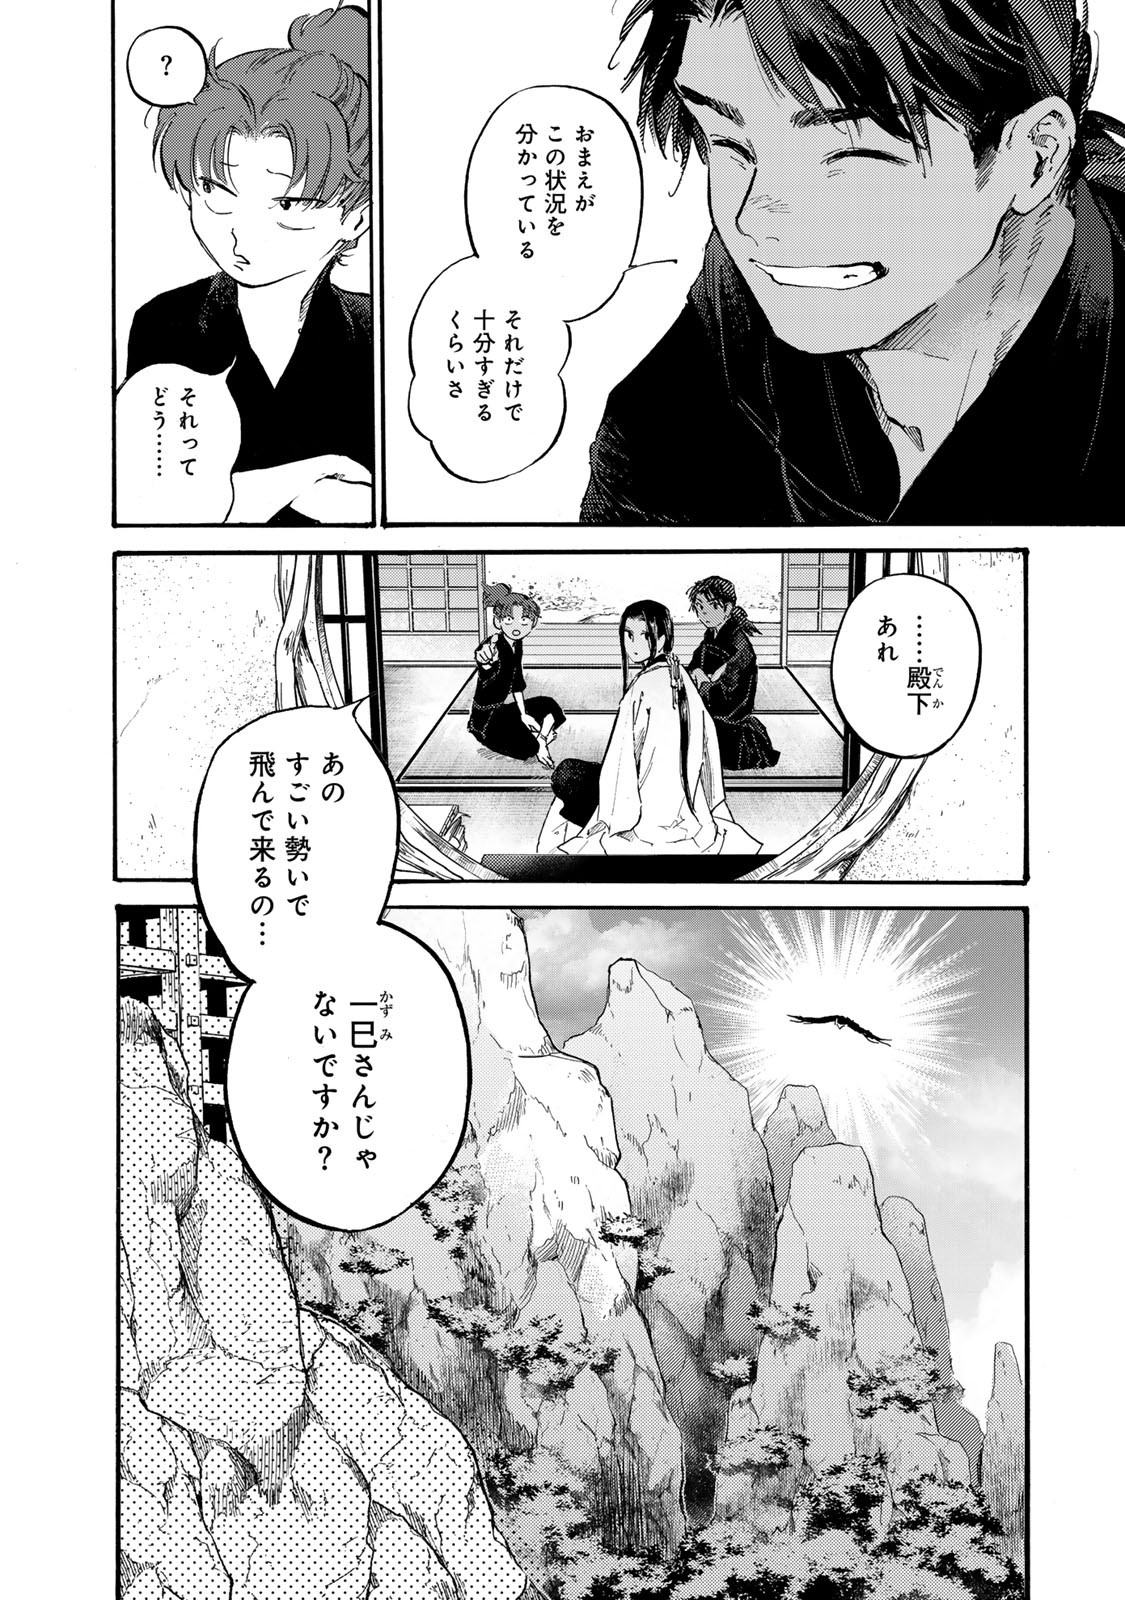 Karasu wa Aruji wo Erabanai - Chapter 39 - Page 14